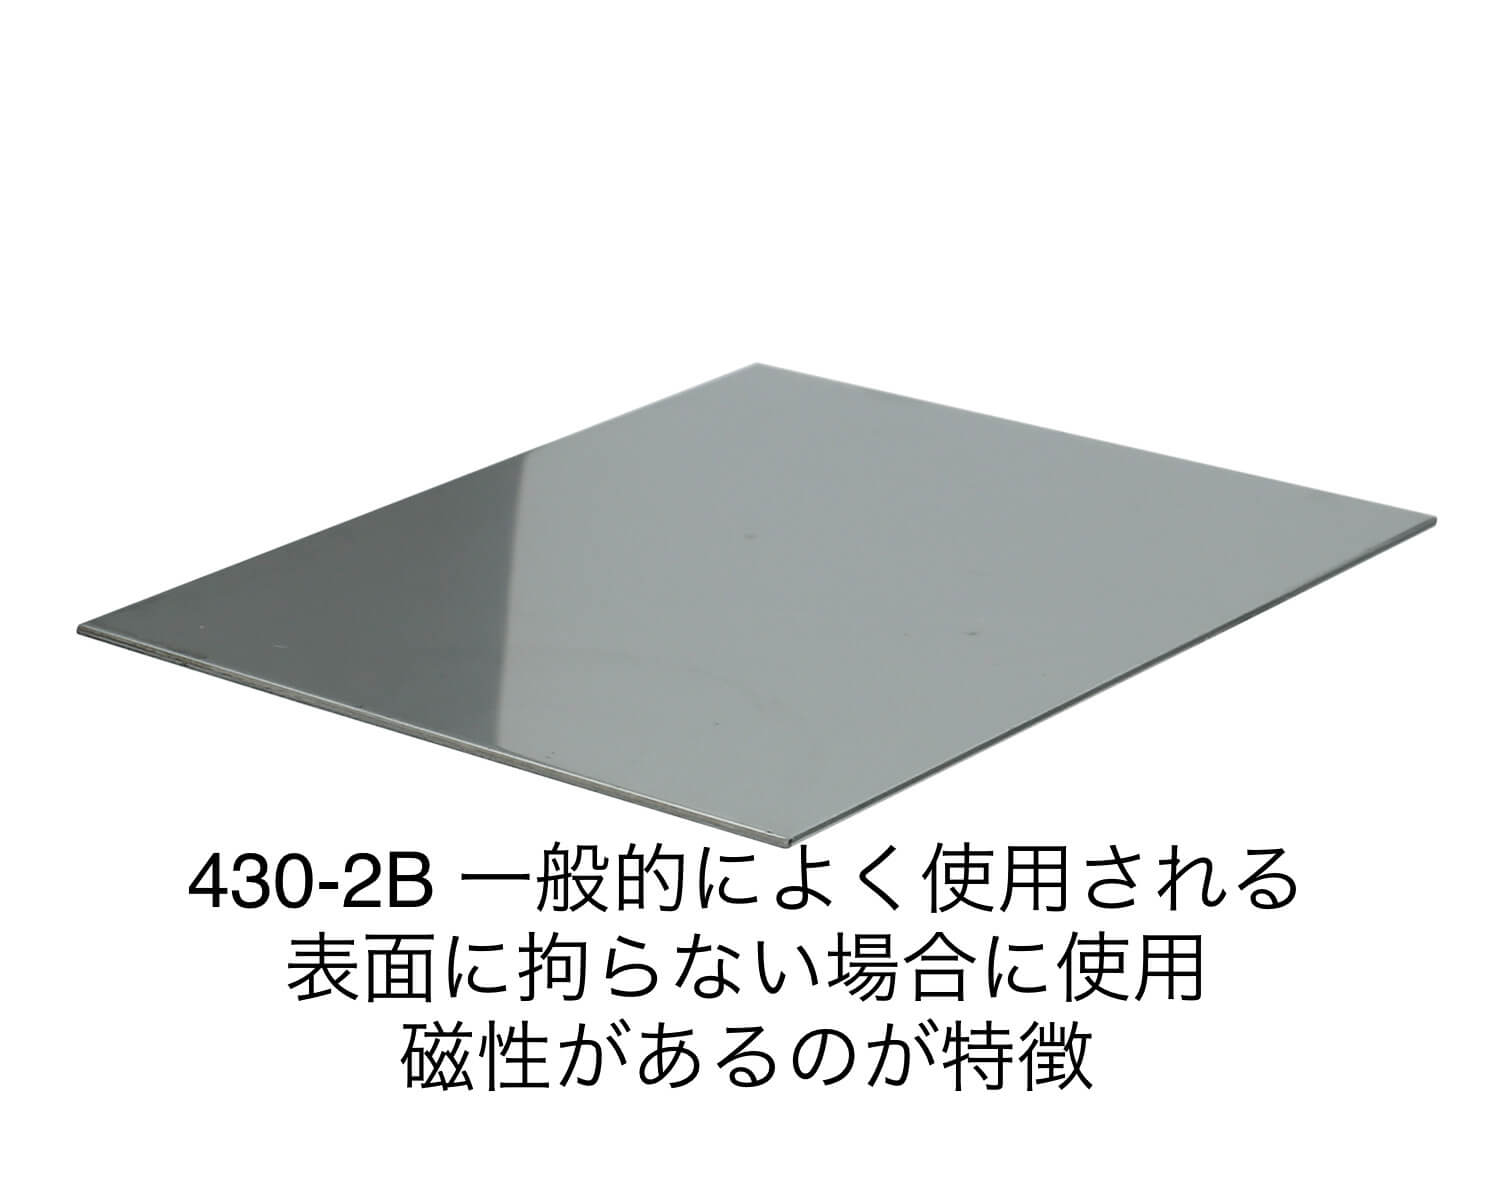 ステンレス板 SUS430-2B 板厚1.5mm 200×200mm オーダーカット 切り板